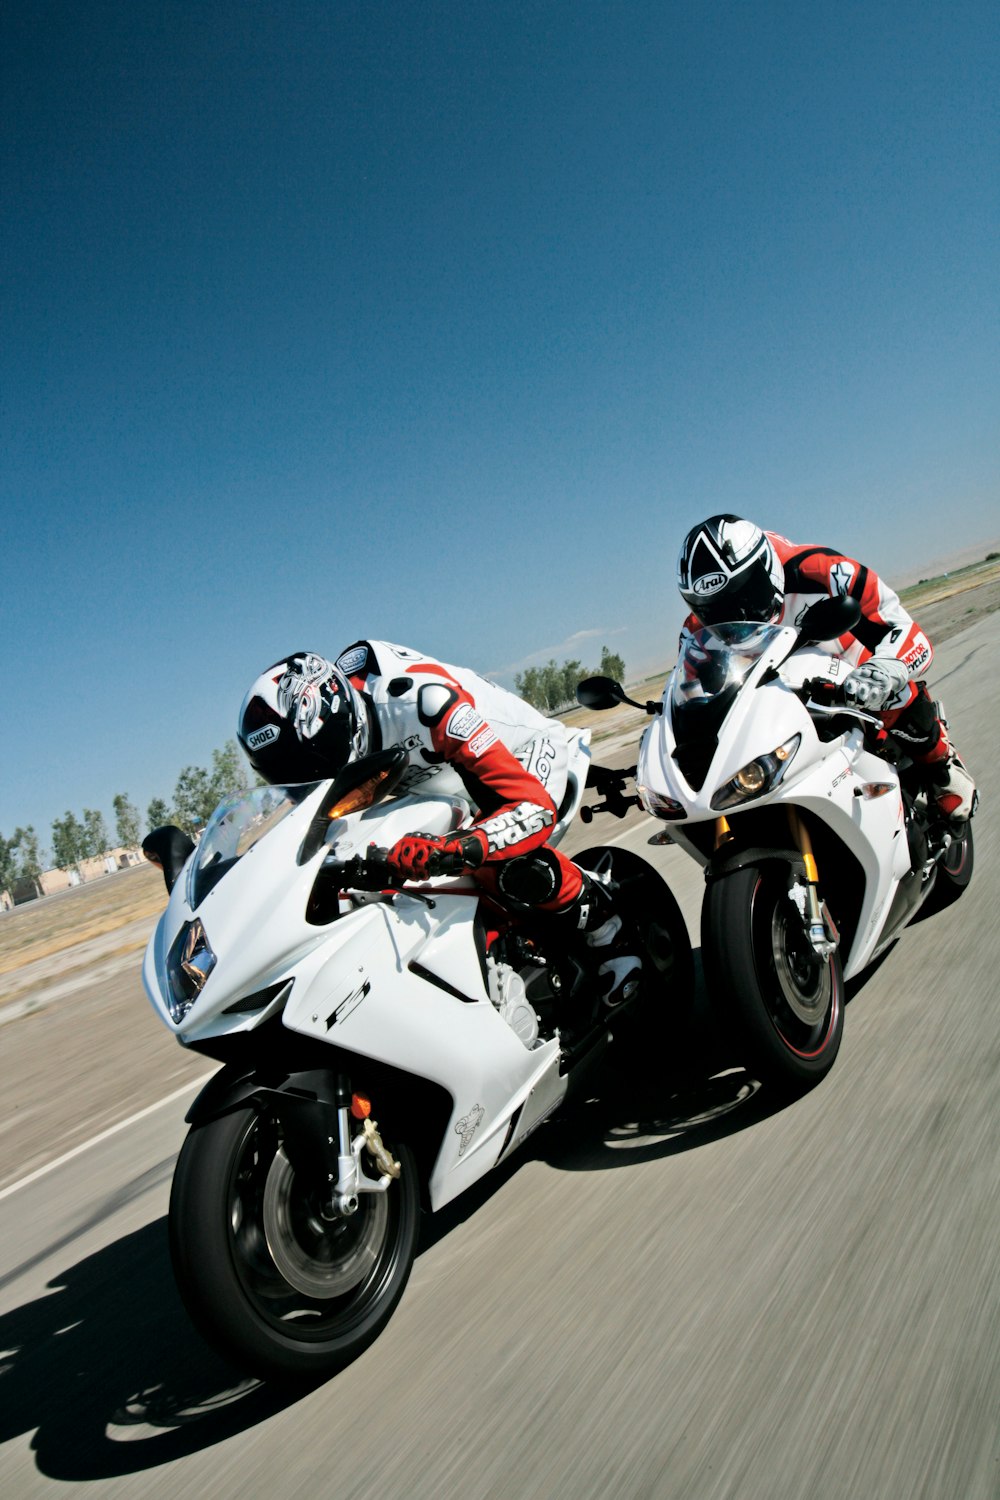 Deux personnes conduisant des motos de sport sur une route asphaltée grise pendant la journée